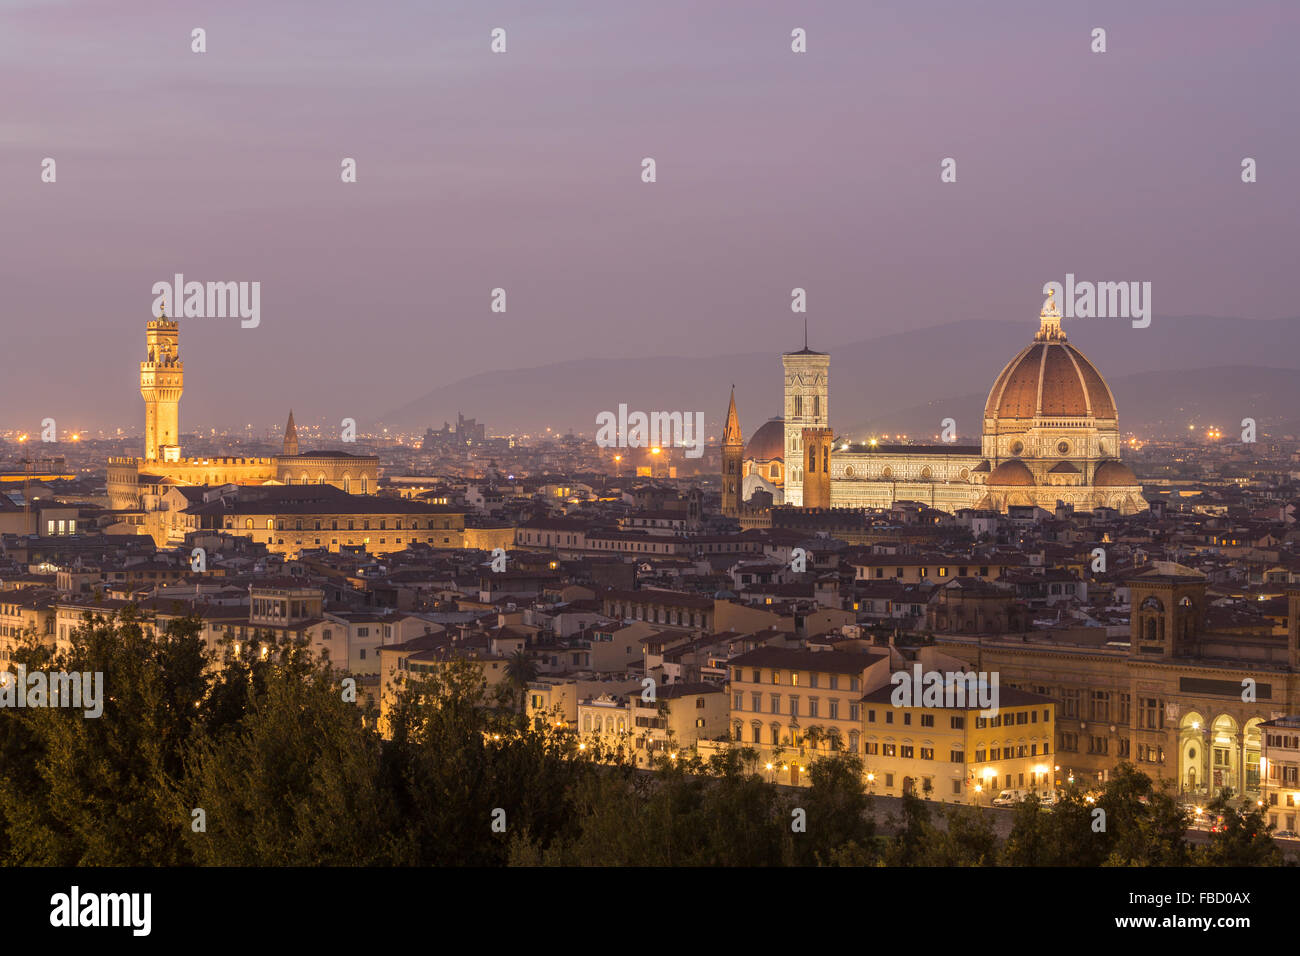 Palazzo Vecchio, la cathédrale de Florence et l'Arno, au crépuscule, centre historique, Florence, Toscane, Italie Banque D'Images